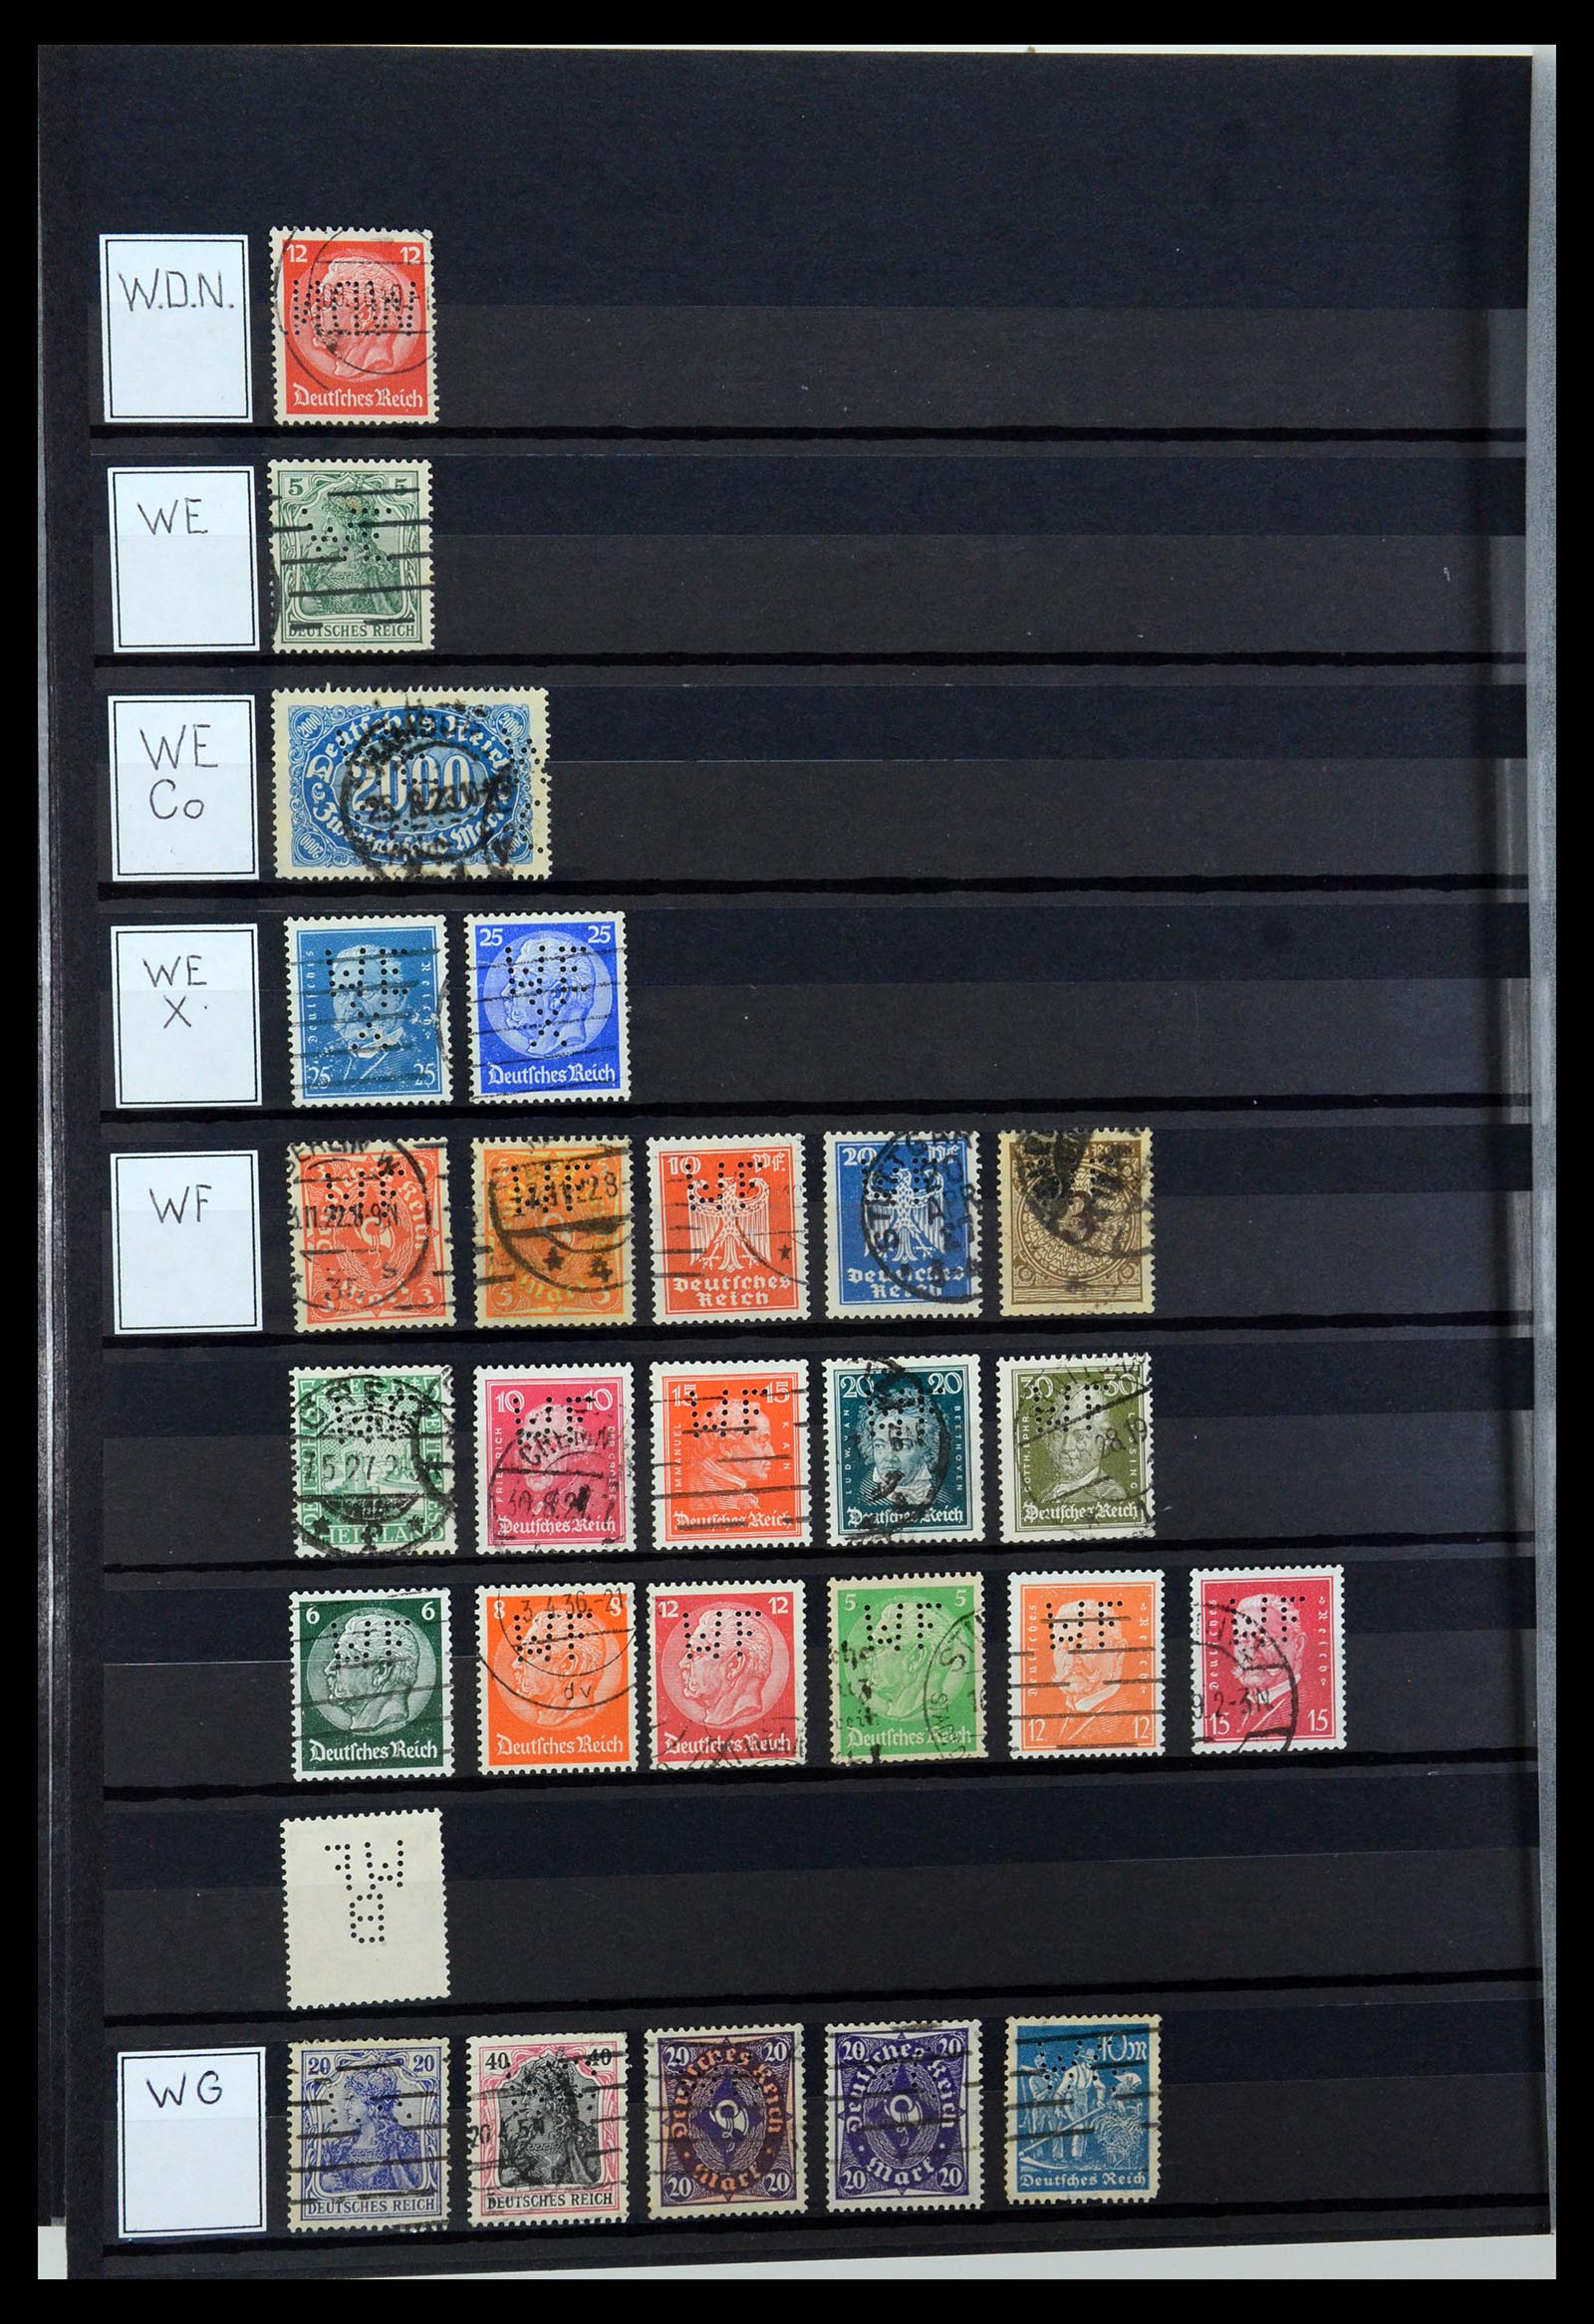 36405 337 - Stamp collection 36405 German Reich perfins 1880-1945.